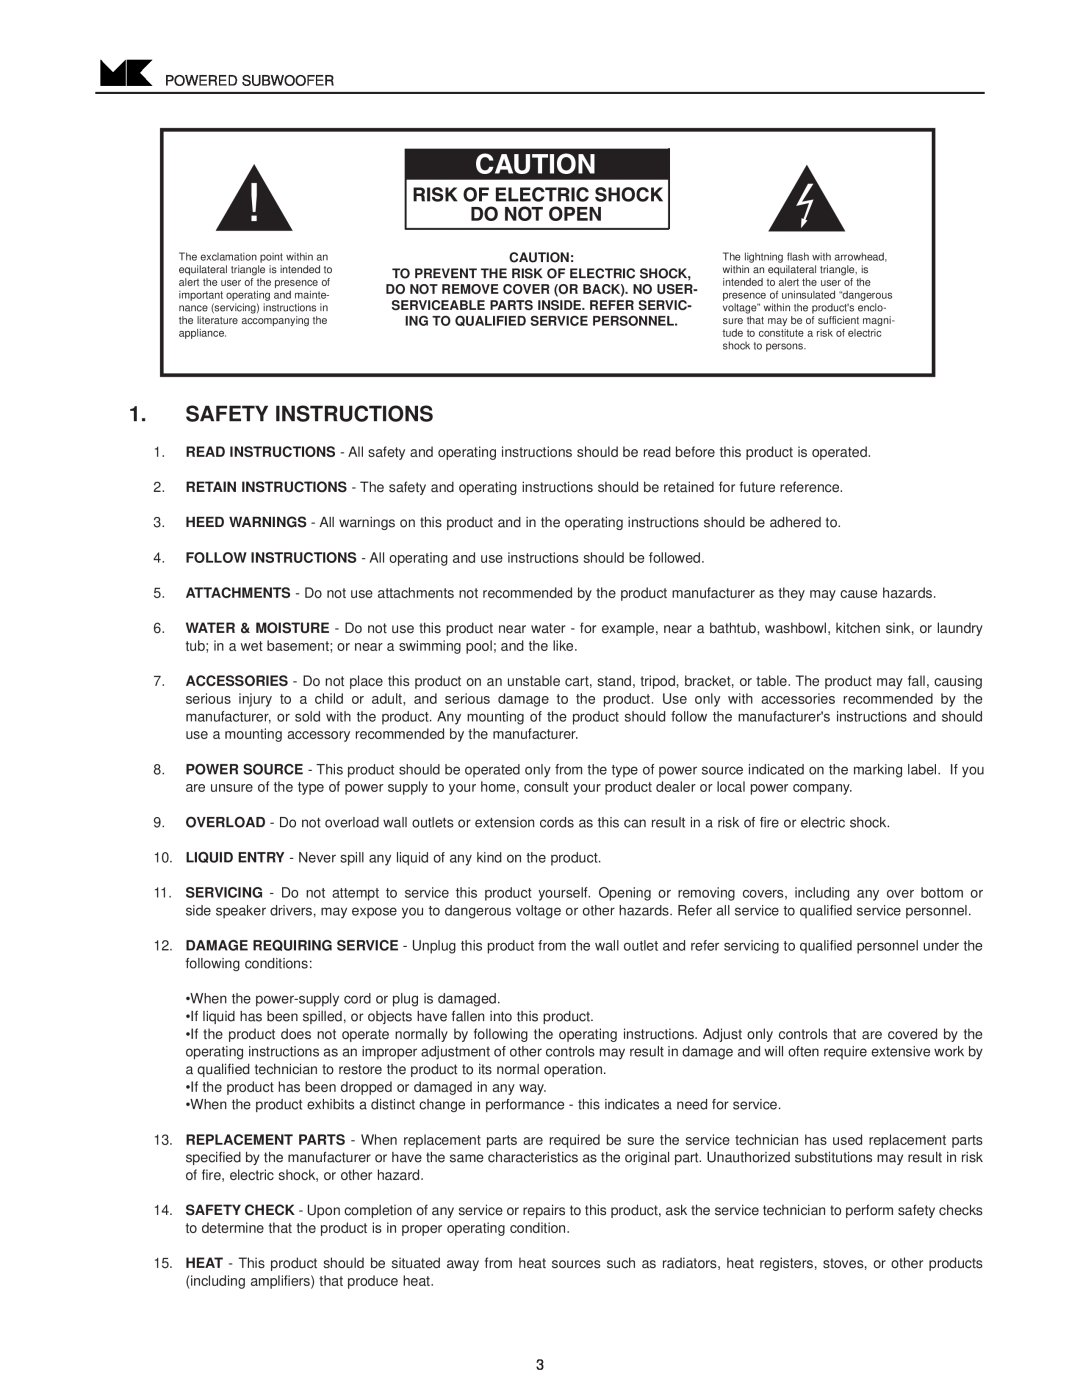 MK Sound VX-1250 operation manual Safety Instructions 